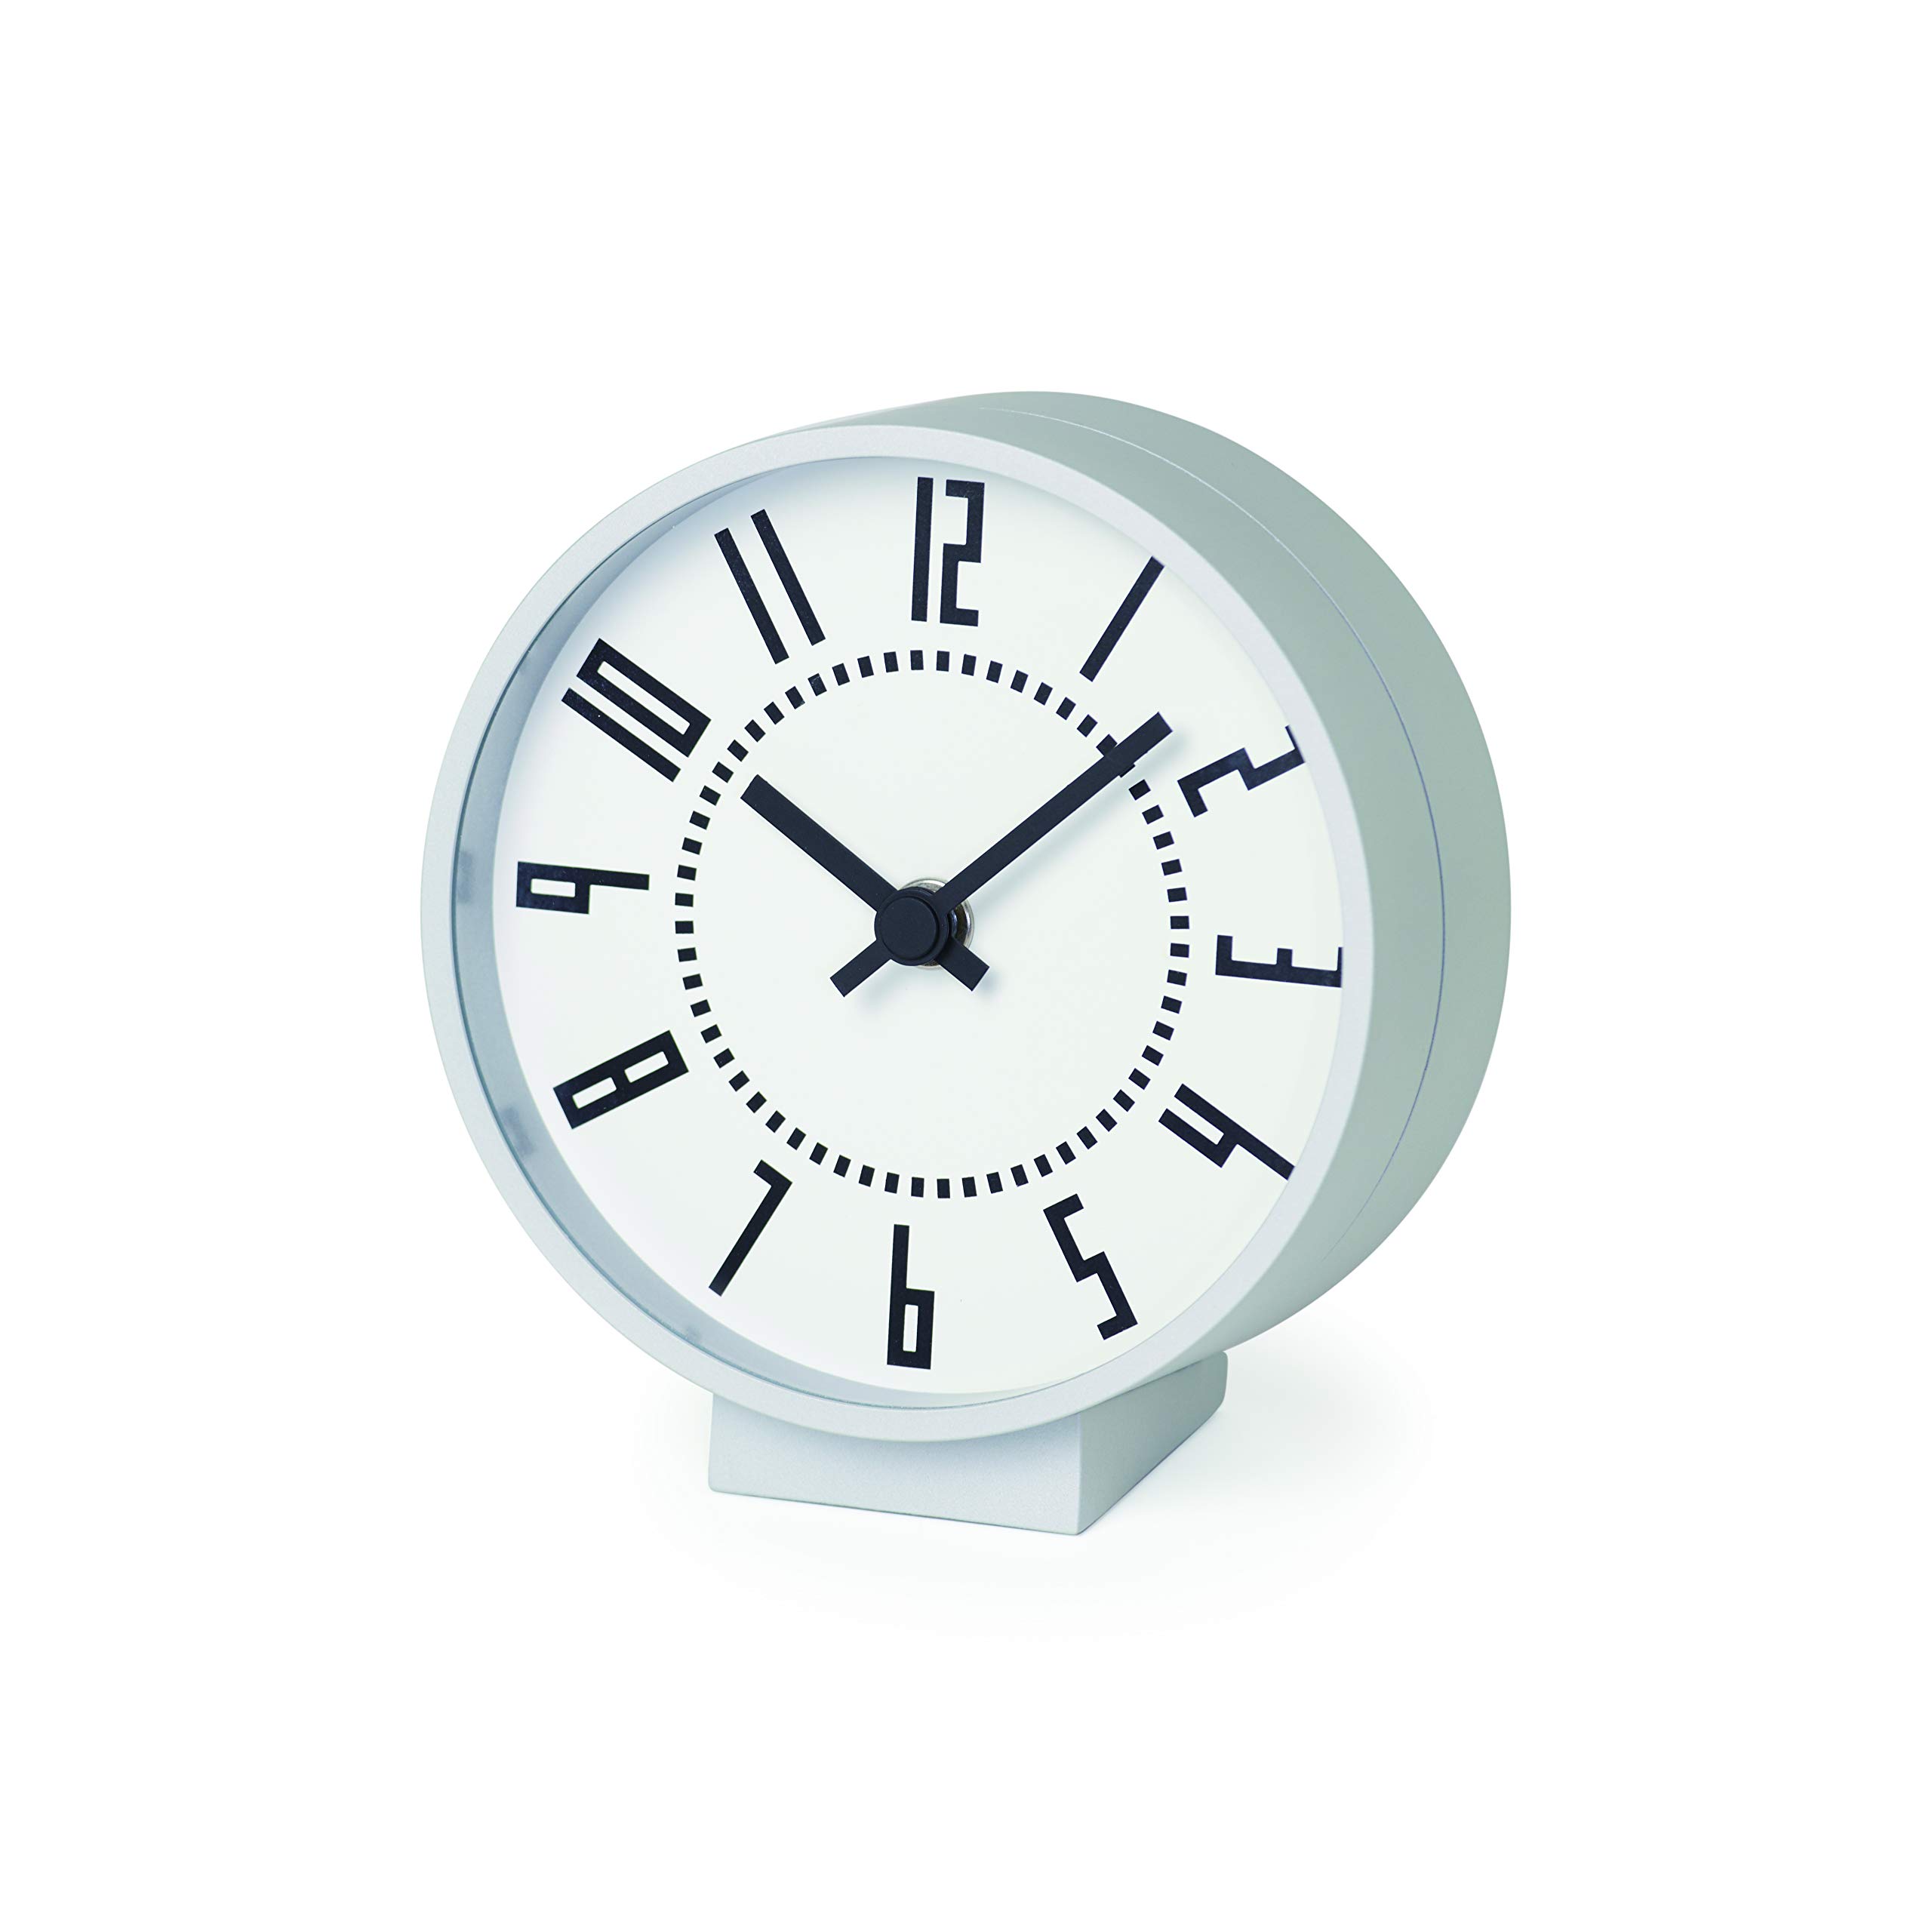 レムノス(Lemnos) 置き時計 アルミ 白 エキクロック Sサイズ eki clock s TIL19-08WHサイズ:w13.0×h14.